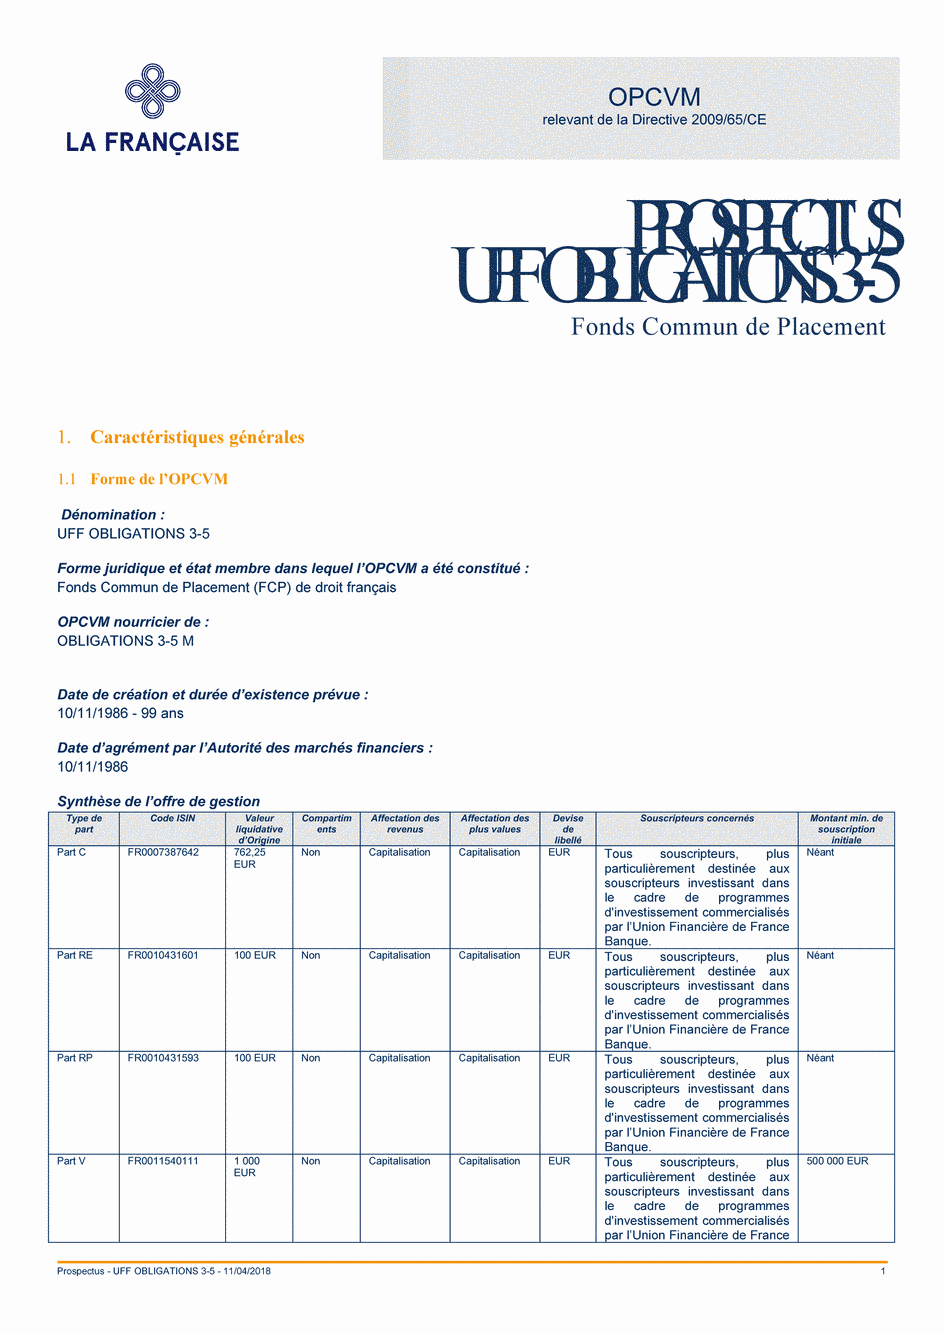 Prospectus UFF Obligations 3-5 (Part V) - 11/04/2018 - Français